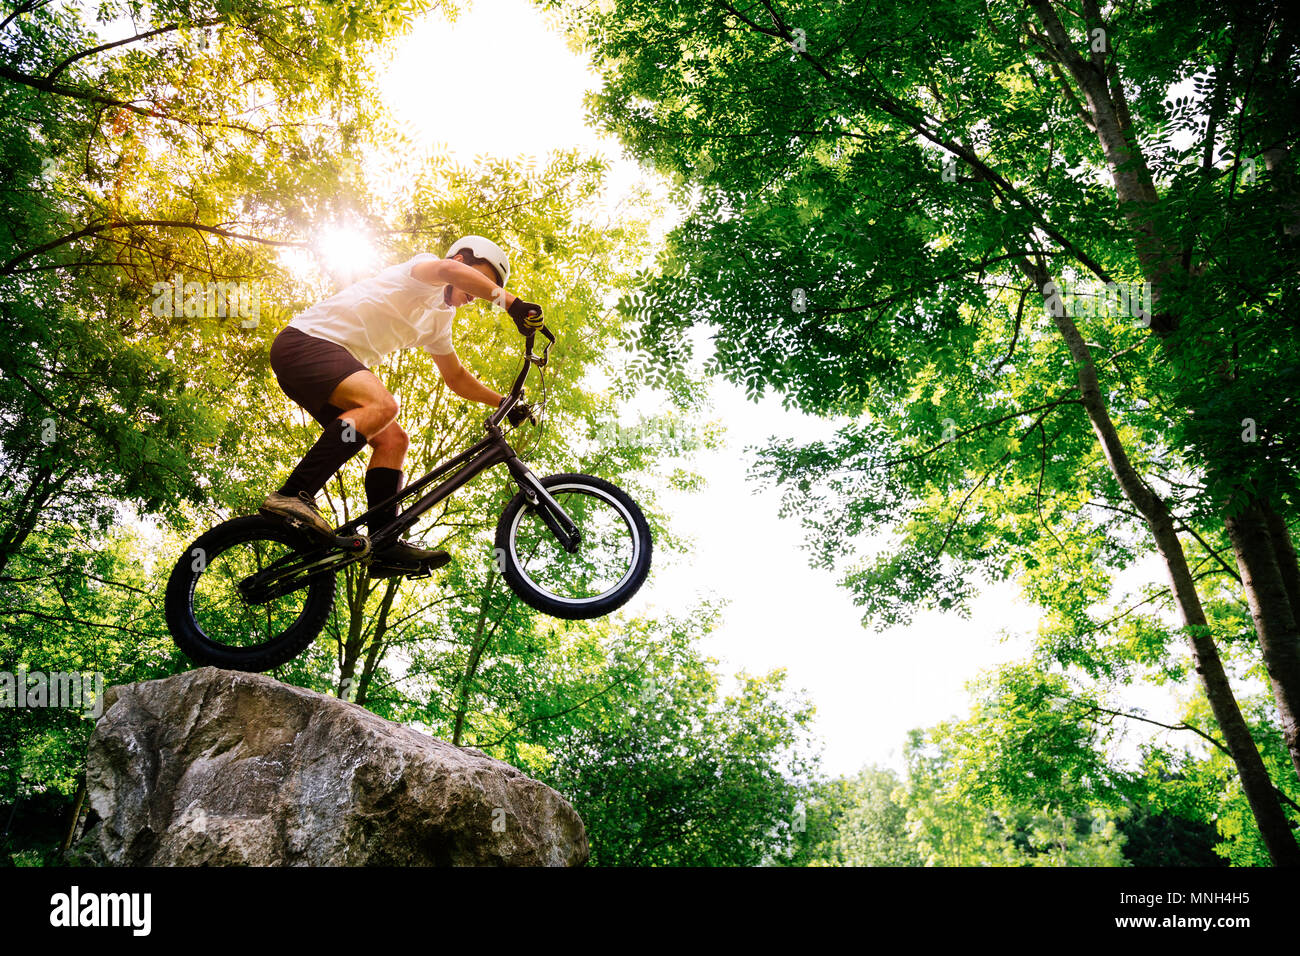 Junge Athlet Tricks auf seinem Versuch Fahrrad in einem Felsen im Wald Stockfoto